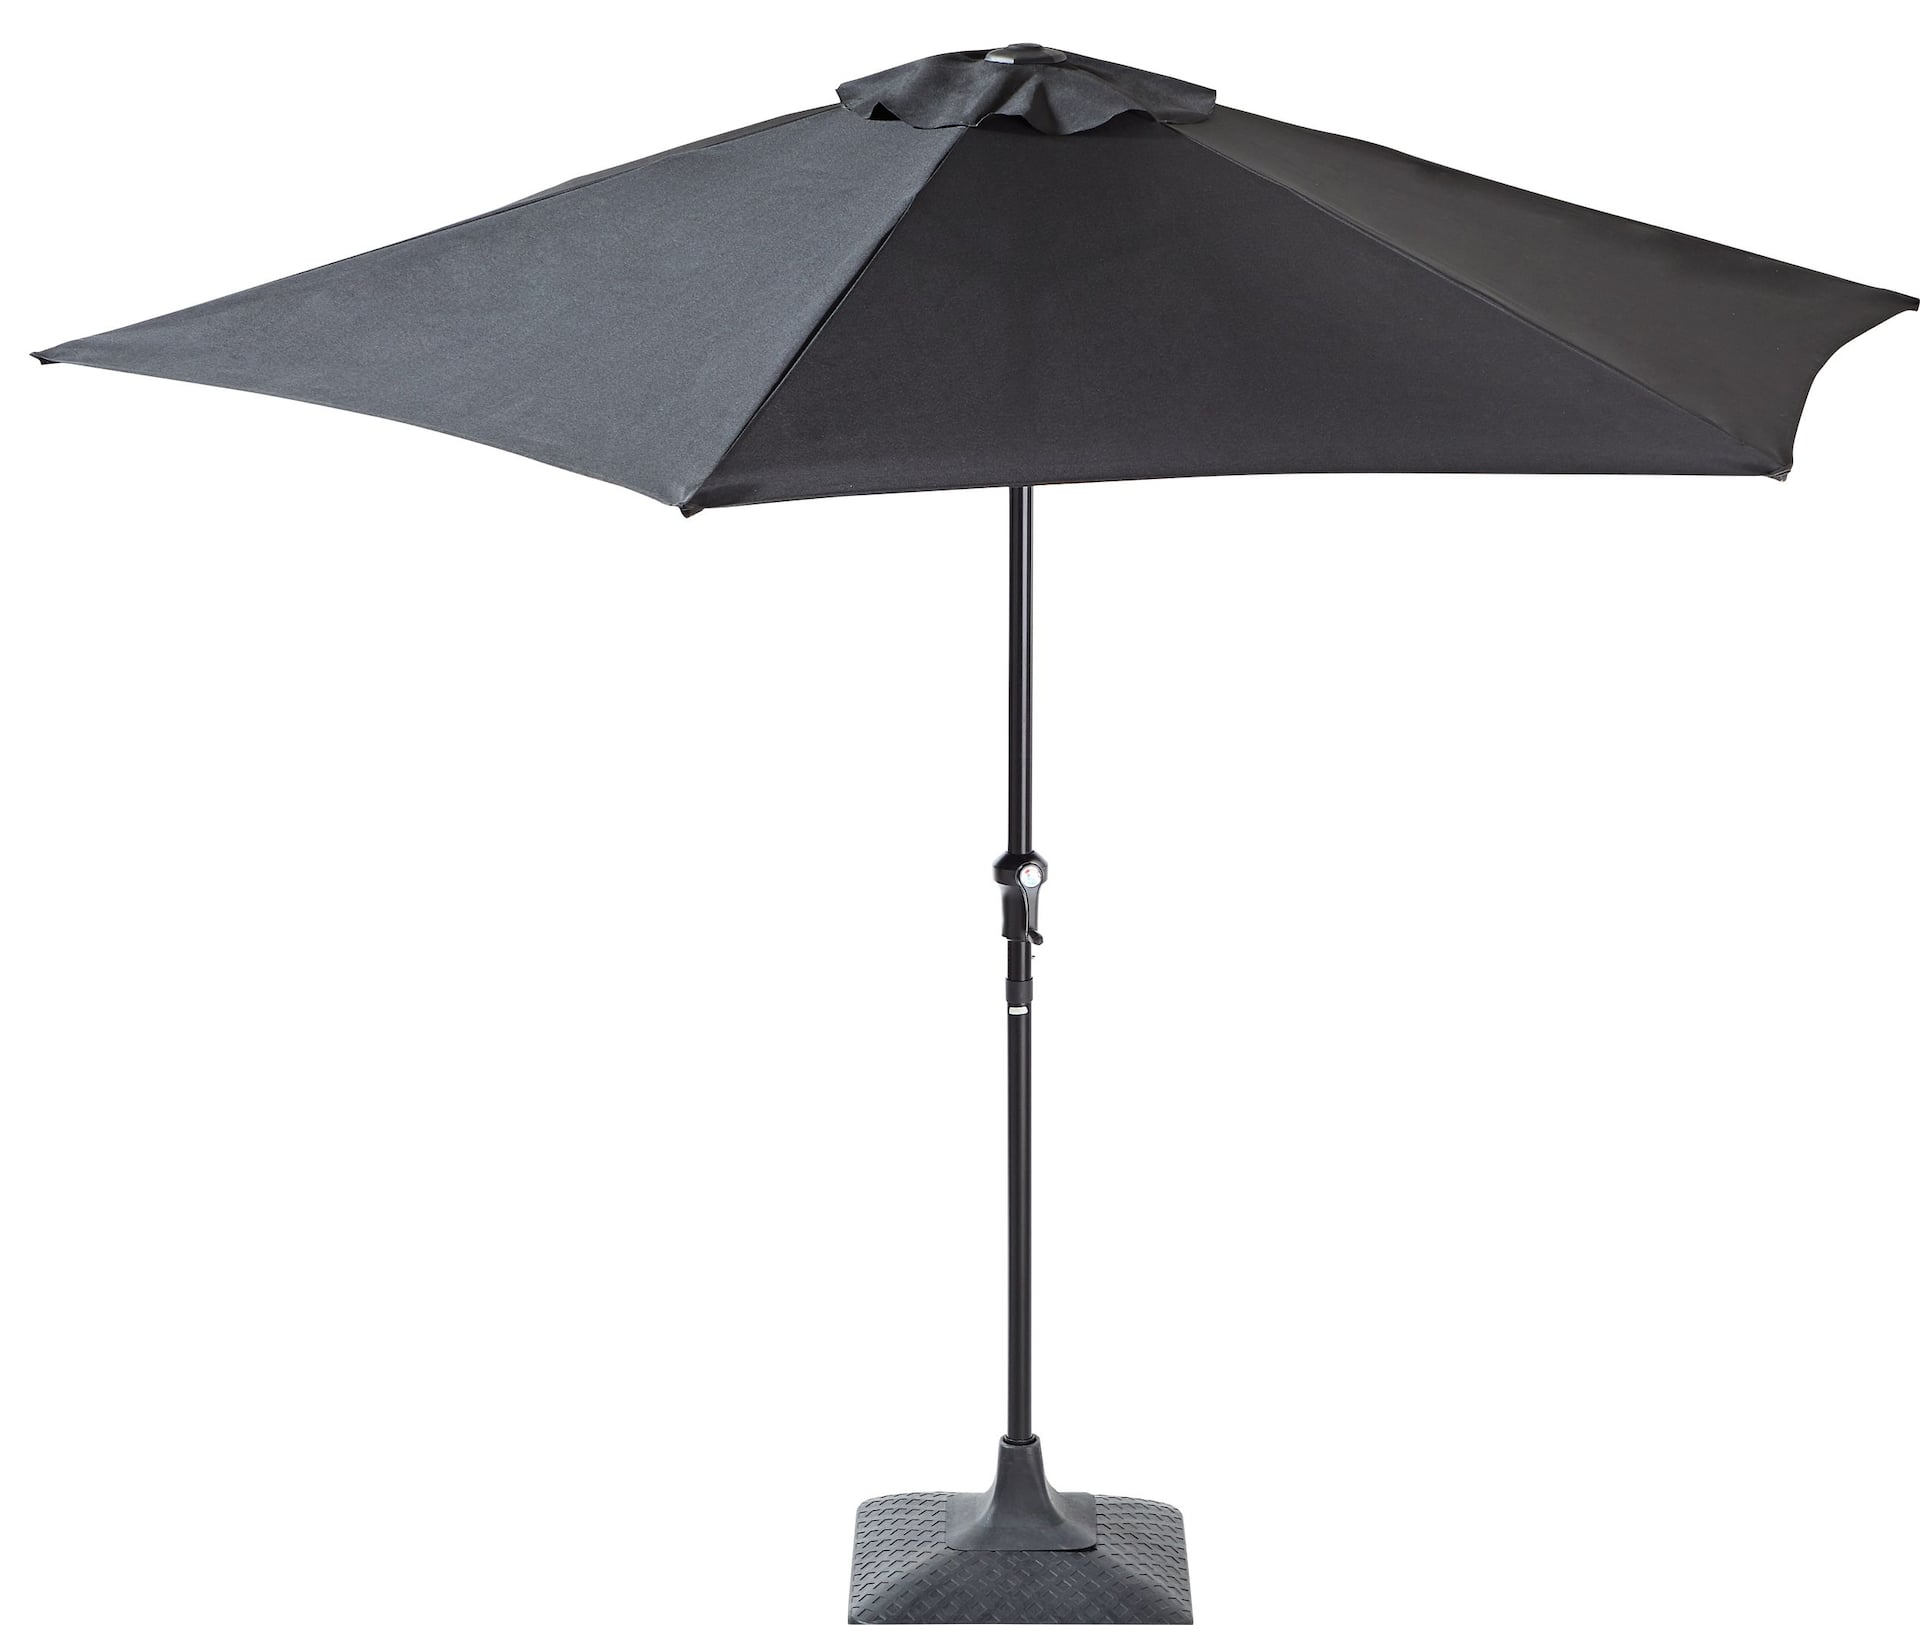 CANVAS Outdoor/Patio Market Umbrella w/ Crank Handle, Black, 9-ft